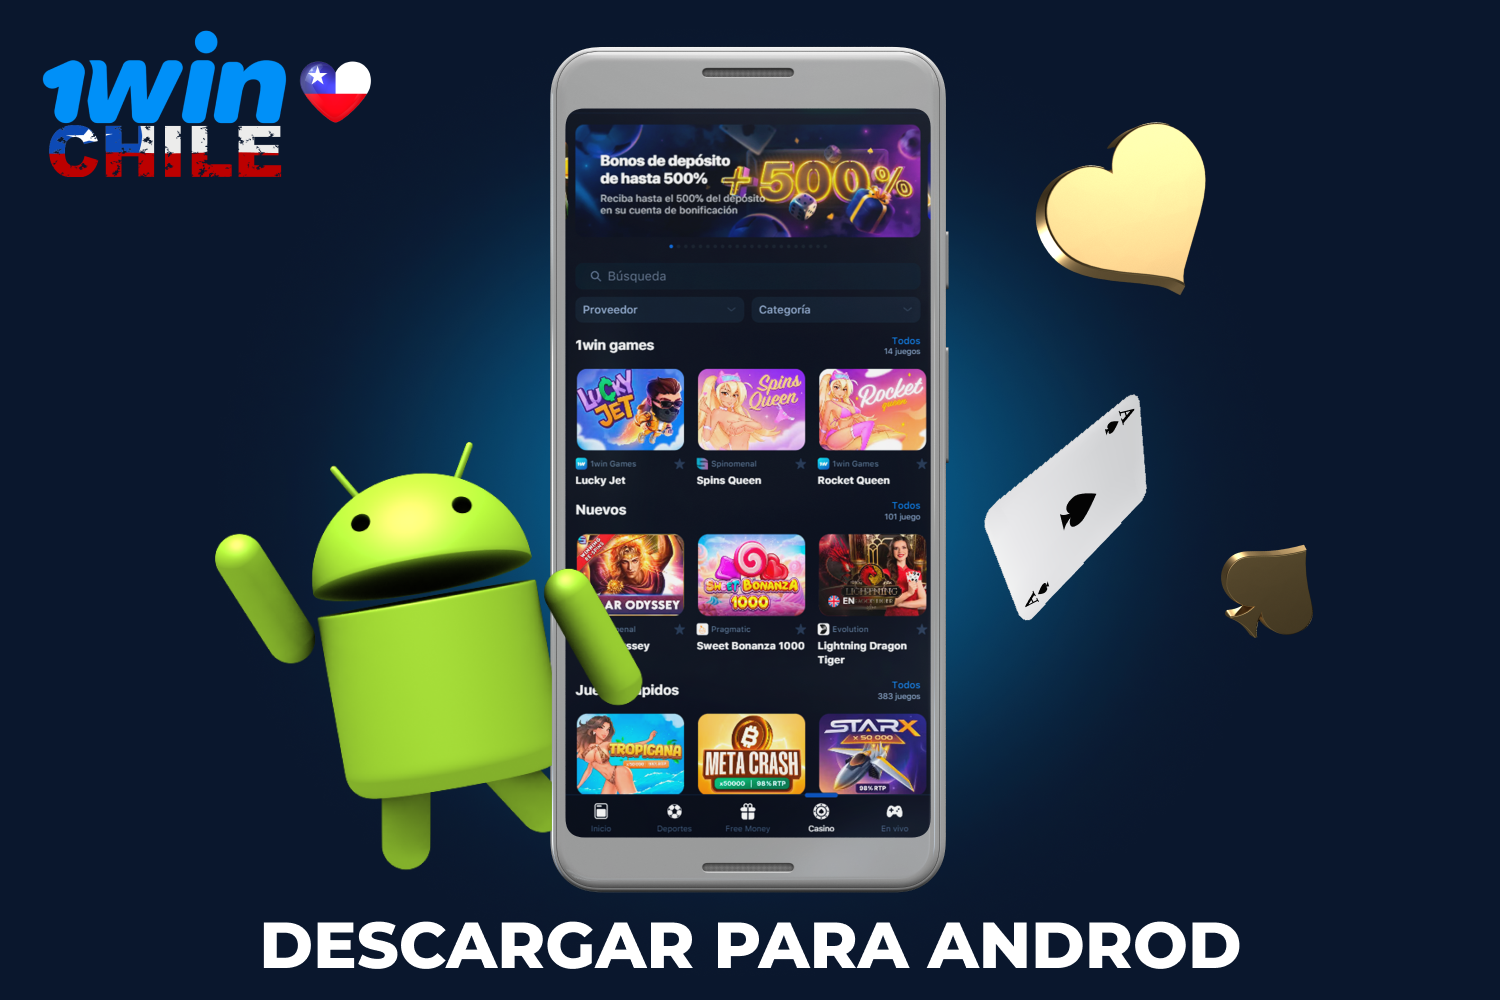 Para descargar la aplicación 1win en un smartphone o tablet Android, el jugador chileno debe seguir unas sencillas instrucciones